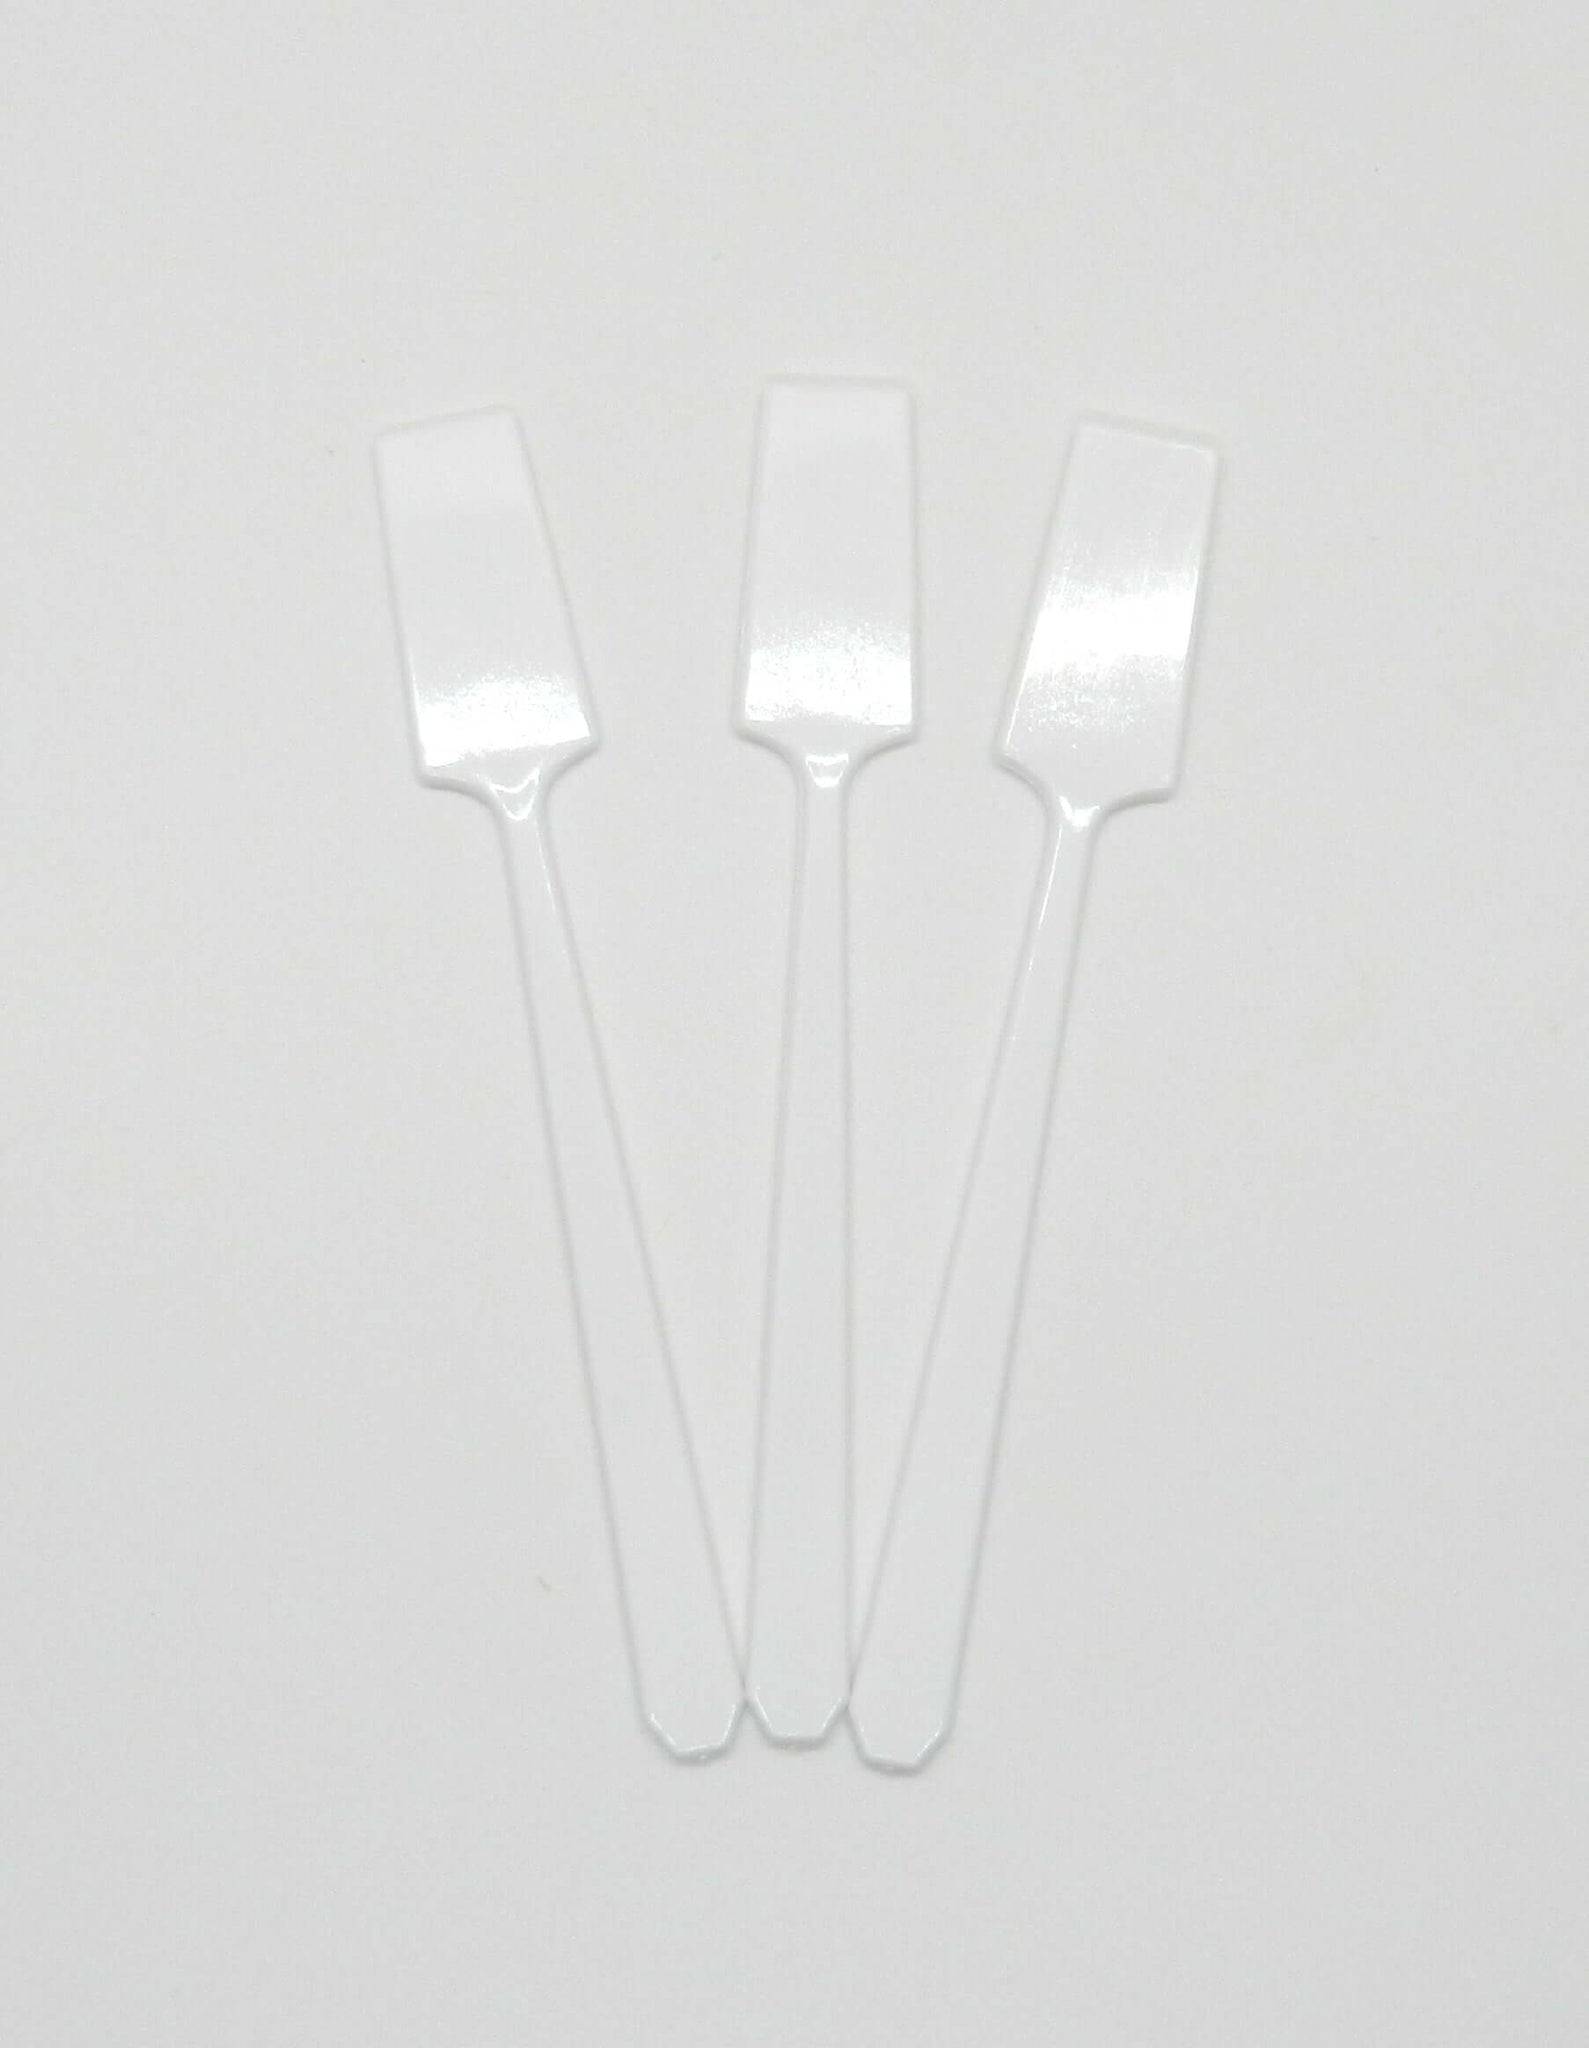 3 white spatulas